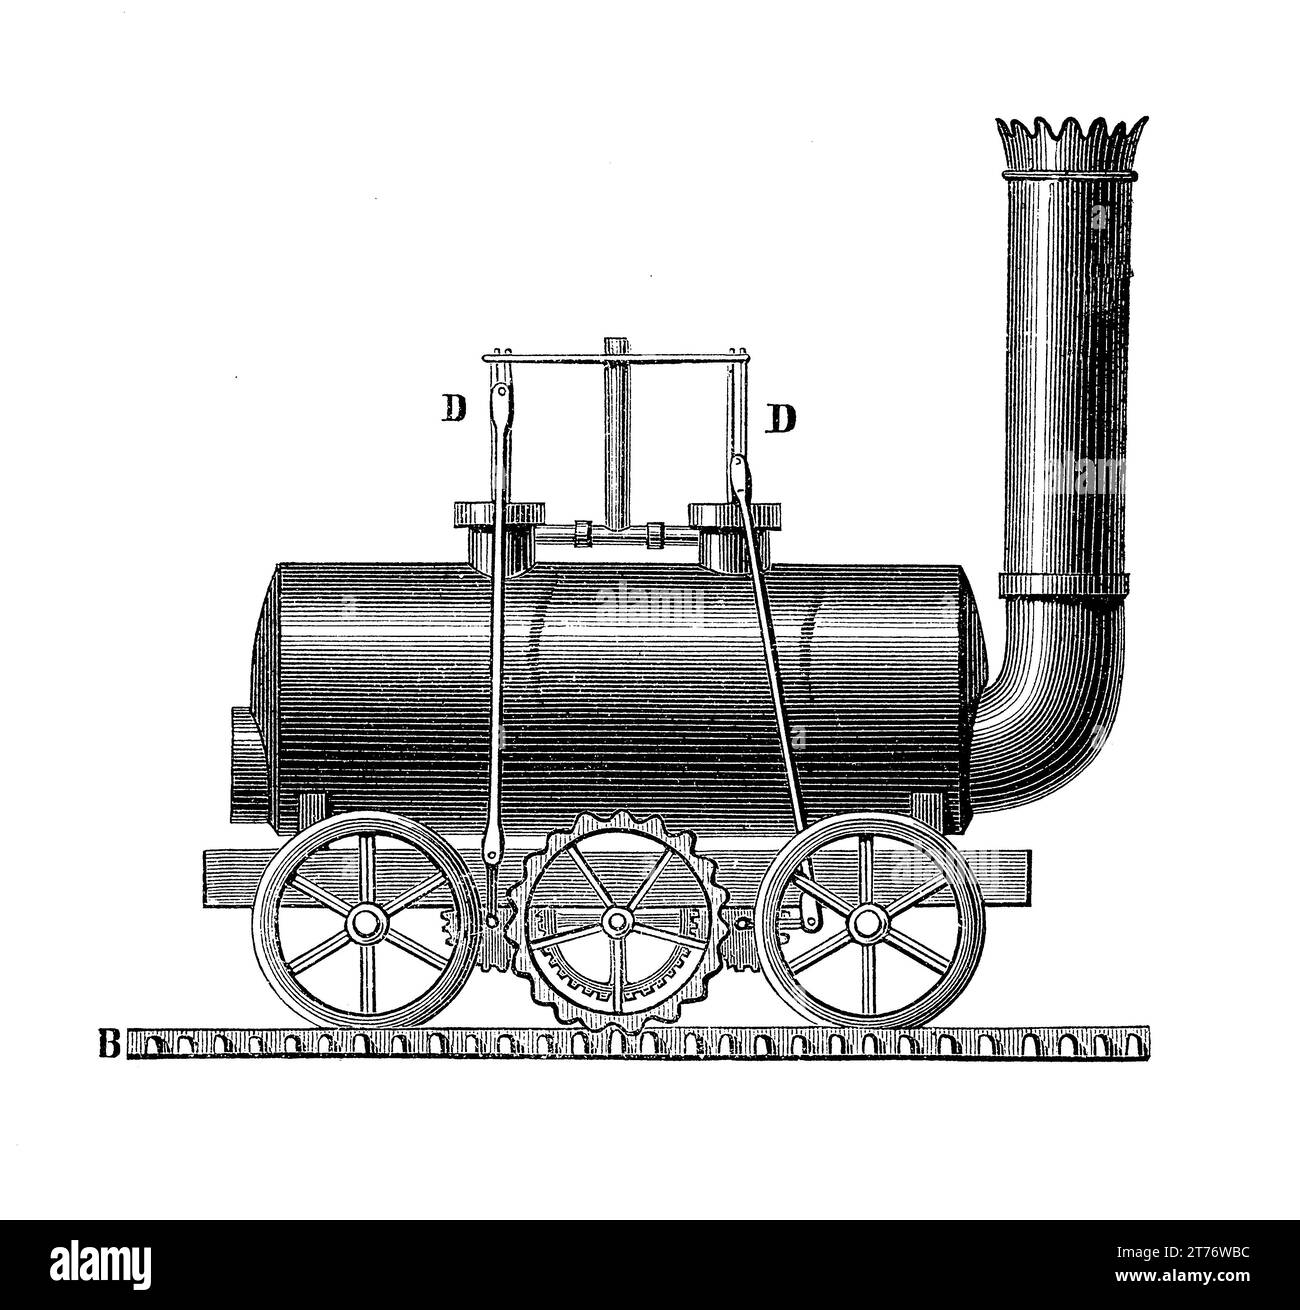 John Blenkinsop Eisenbahnlokomotive von 1811, einer der ersten experimentellen Versuche, Dampfleistung auf der Schiene einzusetzen. Stockfoto